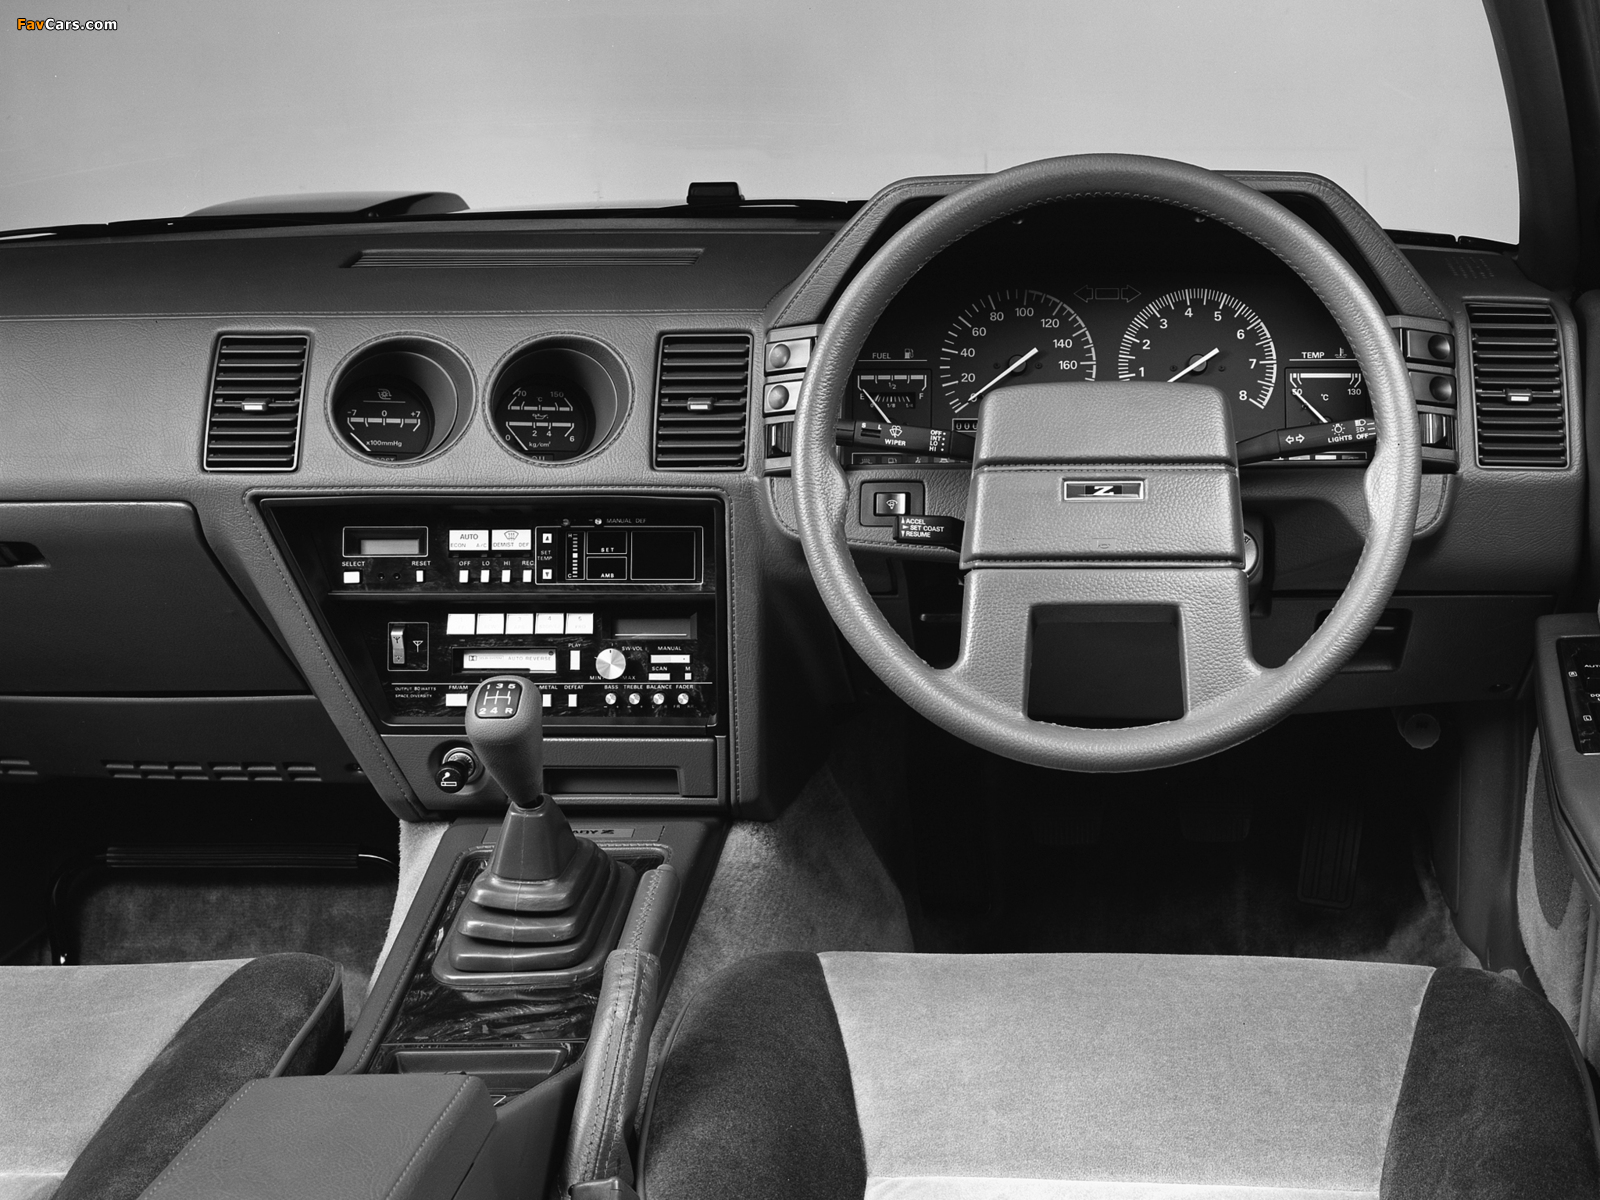 Nissan Fairlady Z (Z31) 1983–89 photos (1600 x 1200)